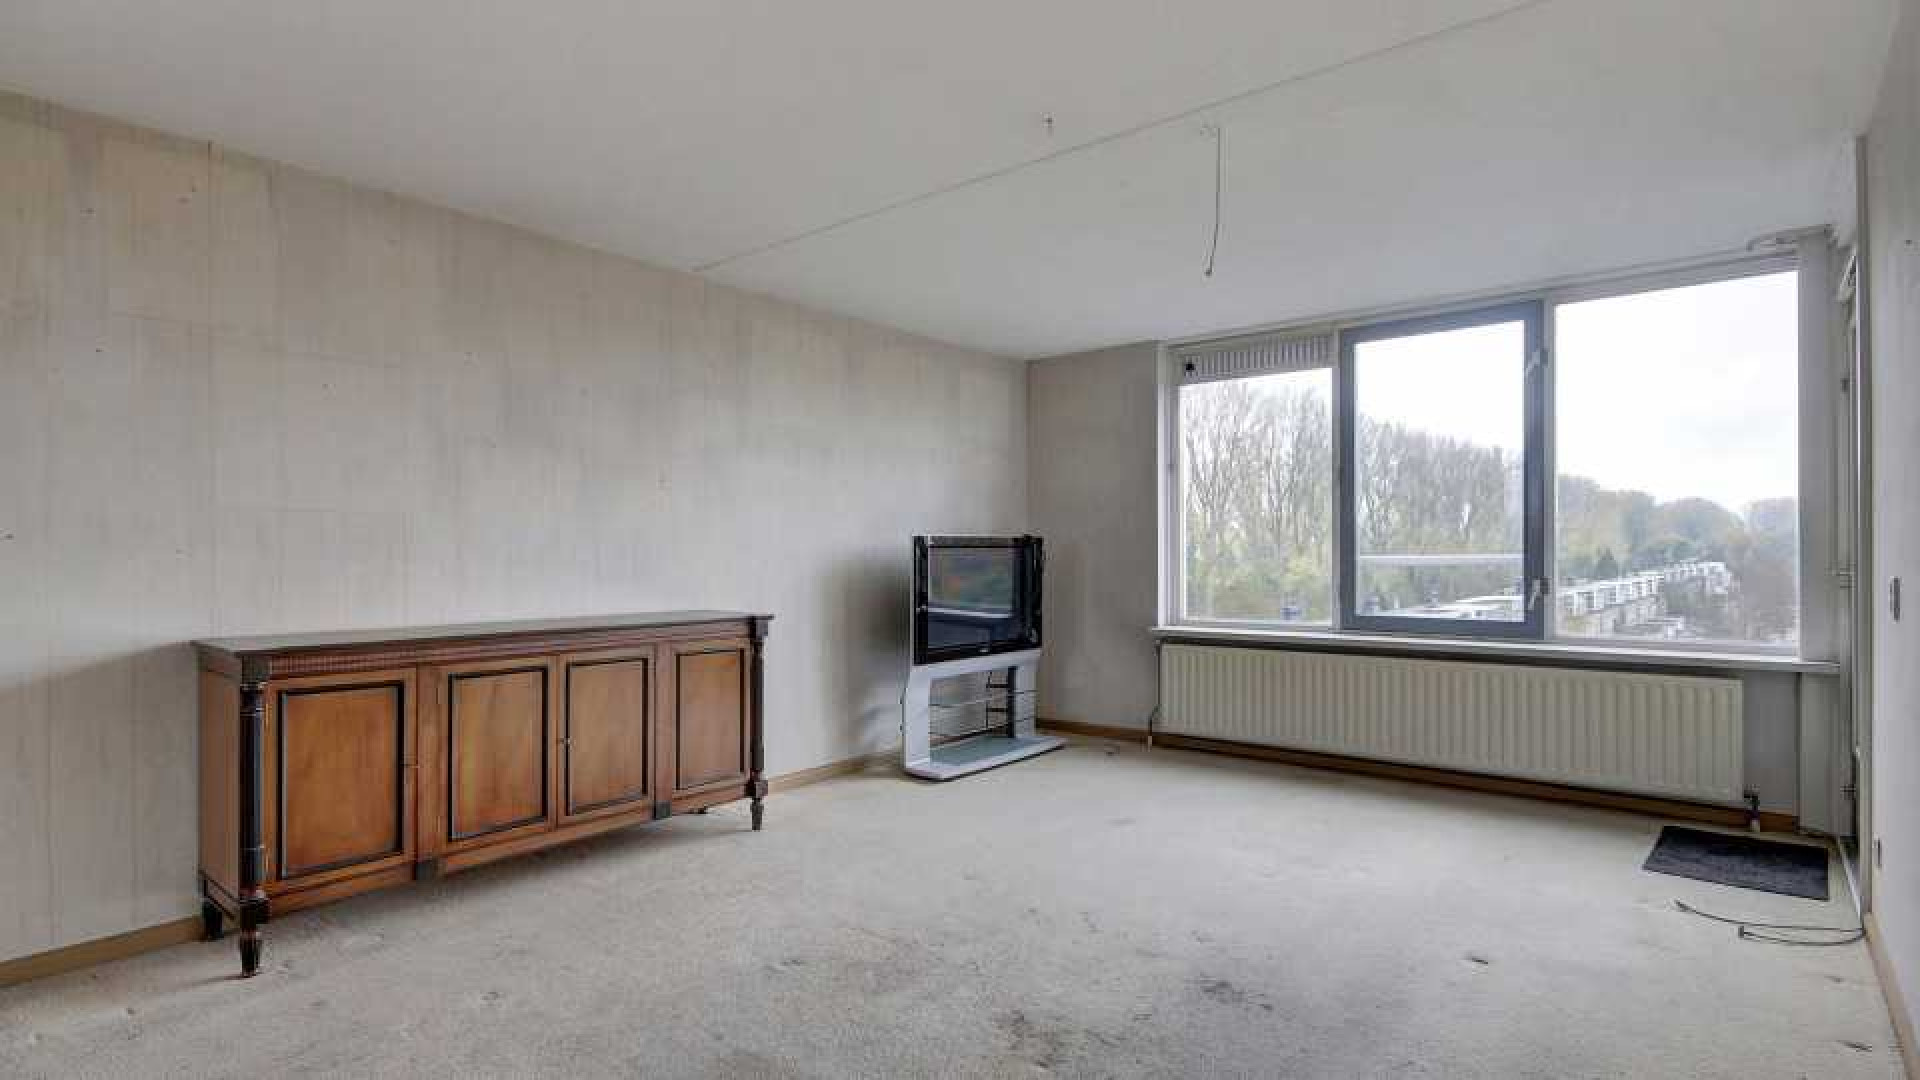 Patrick Kluivert verkoopt zijn Amsterdamse appartement. Zie foto's 4